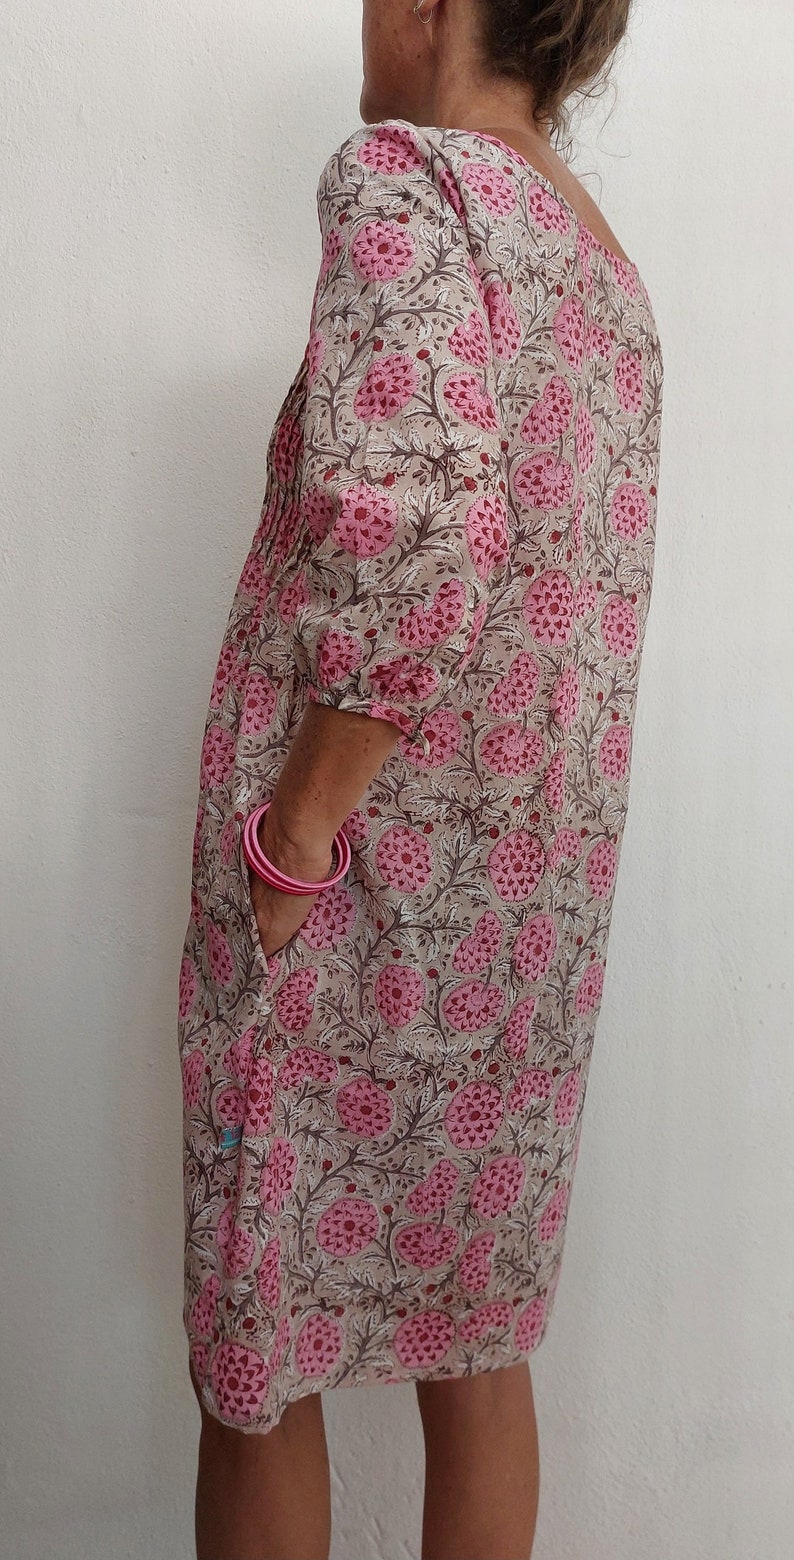 Vorne plissiertes Kleid aus Baumwolle, rosa Blumenblockdruck Bild 2